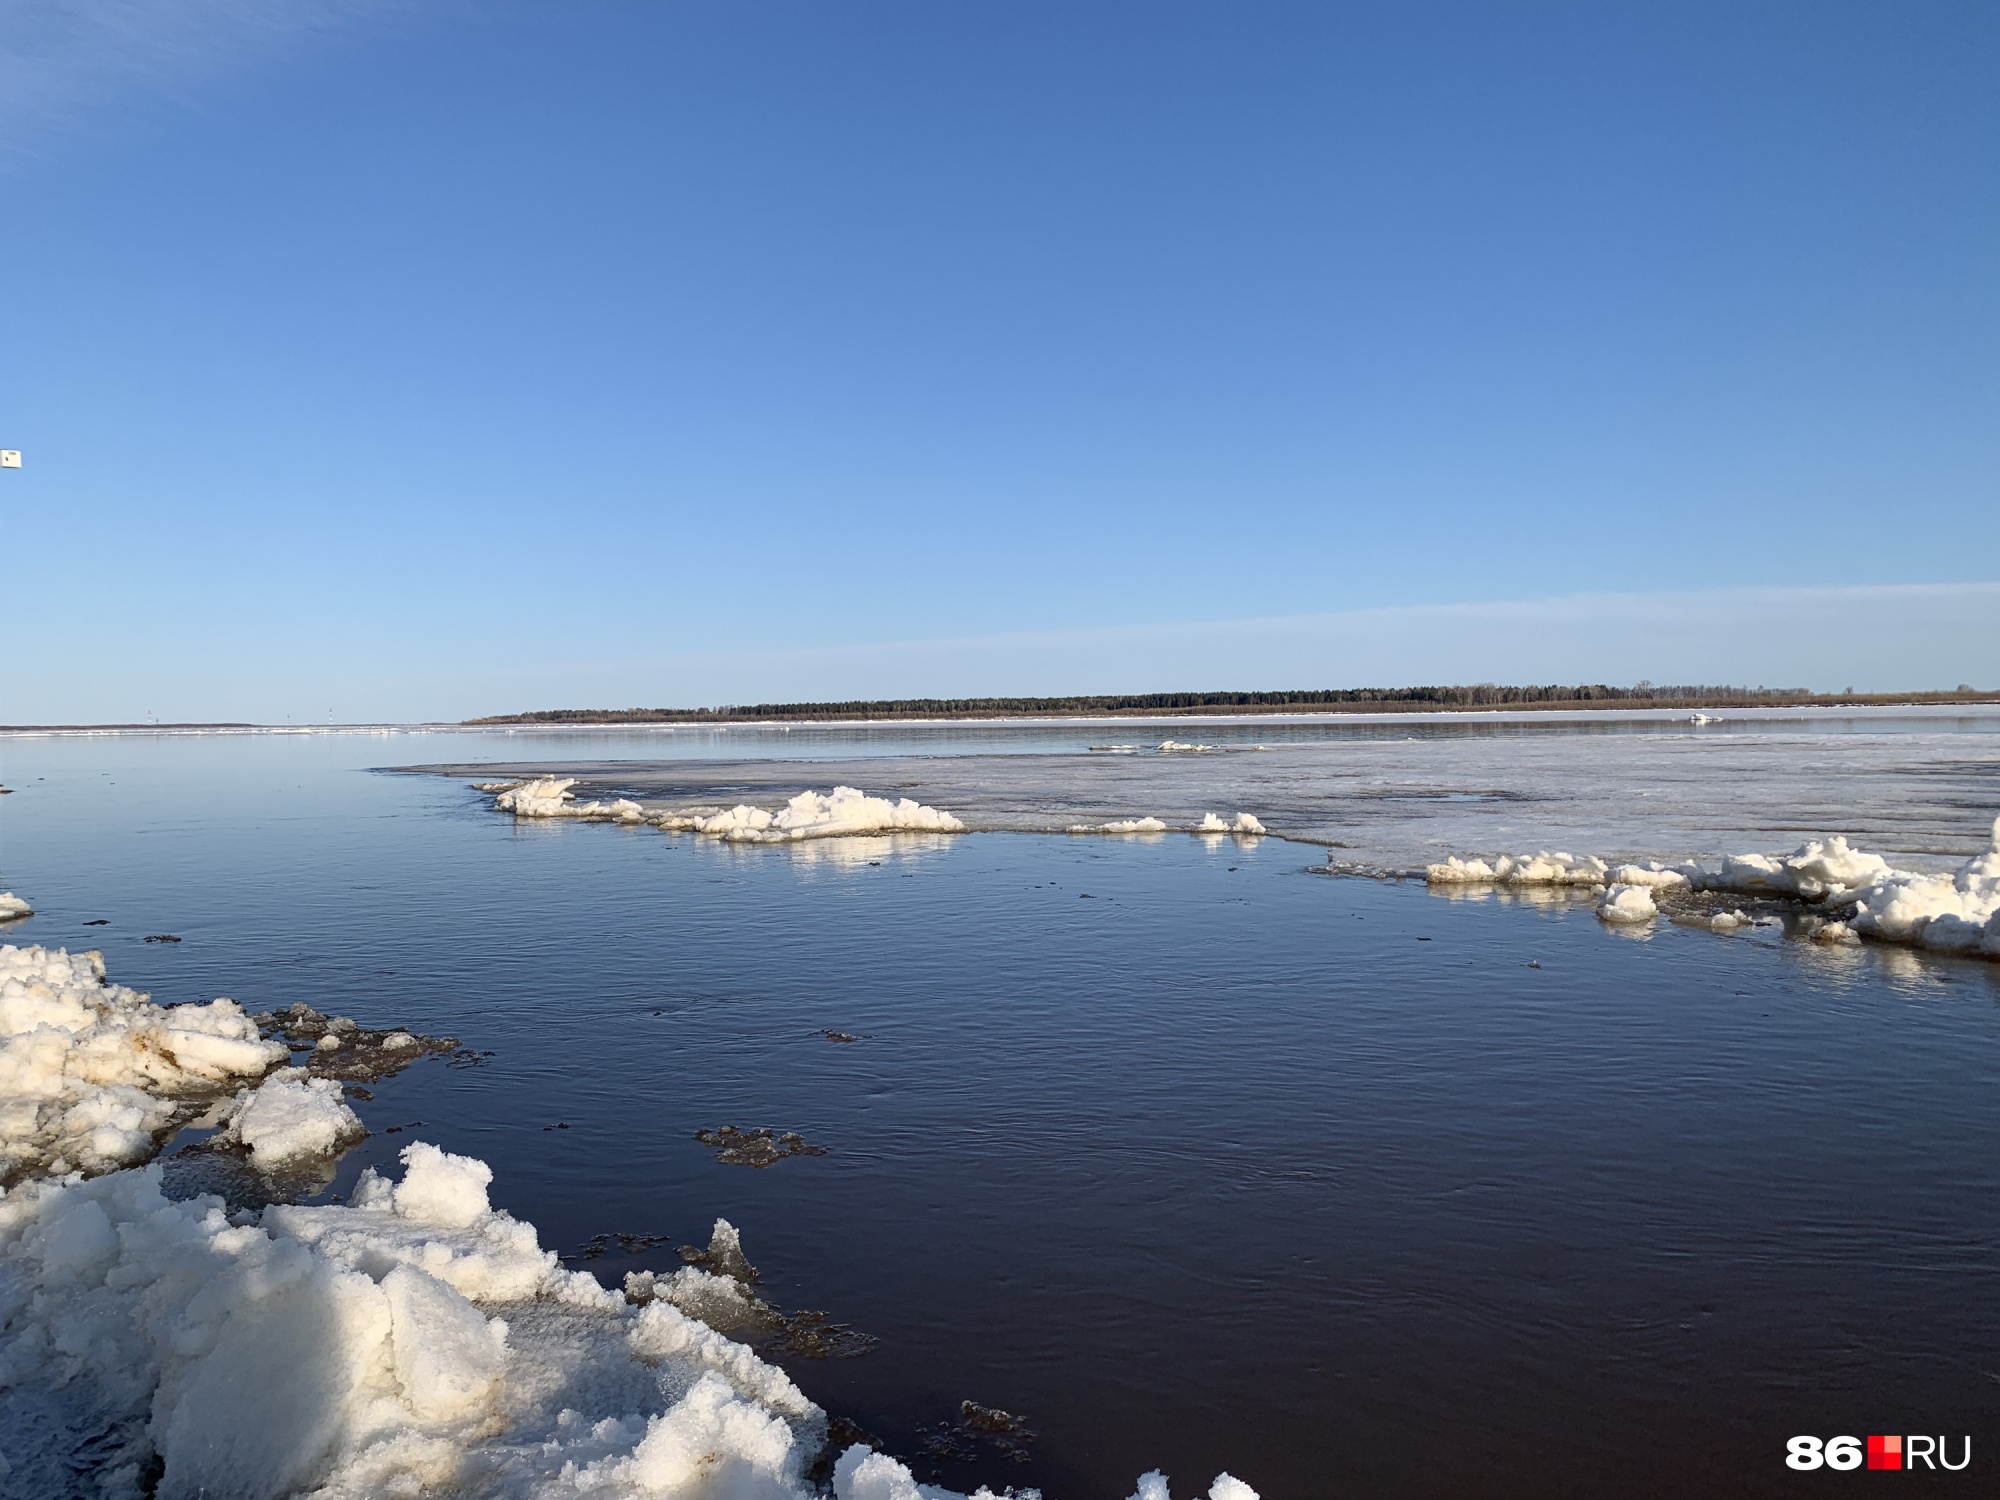 Лучше всего поверхность воды видна у речпорта, вниз по течению Обь еще скована льдом